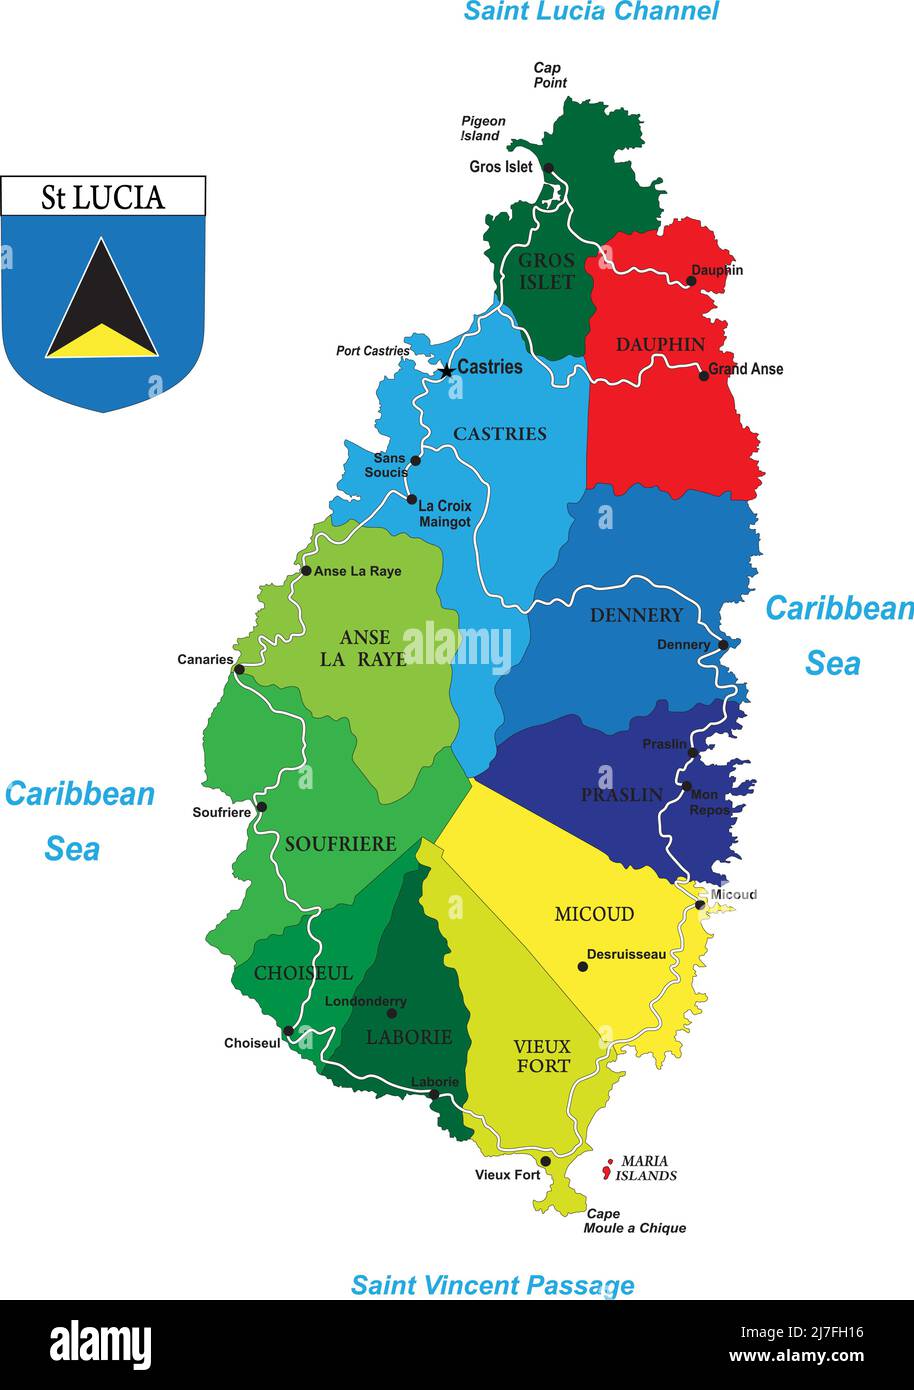 Mappa vettoriale molto dettagliata dell'isola caraibica di Santa Lucia con le principali città, regioni e strade. Illustrazione Vettoriale